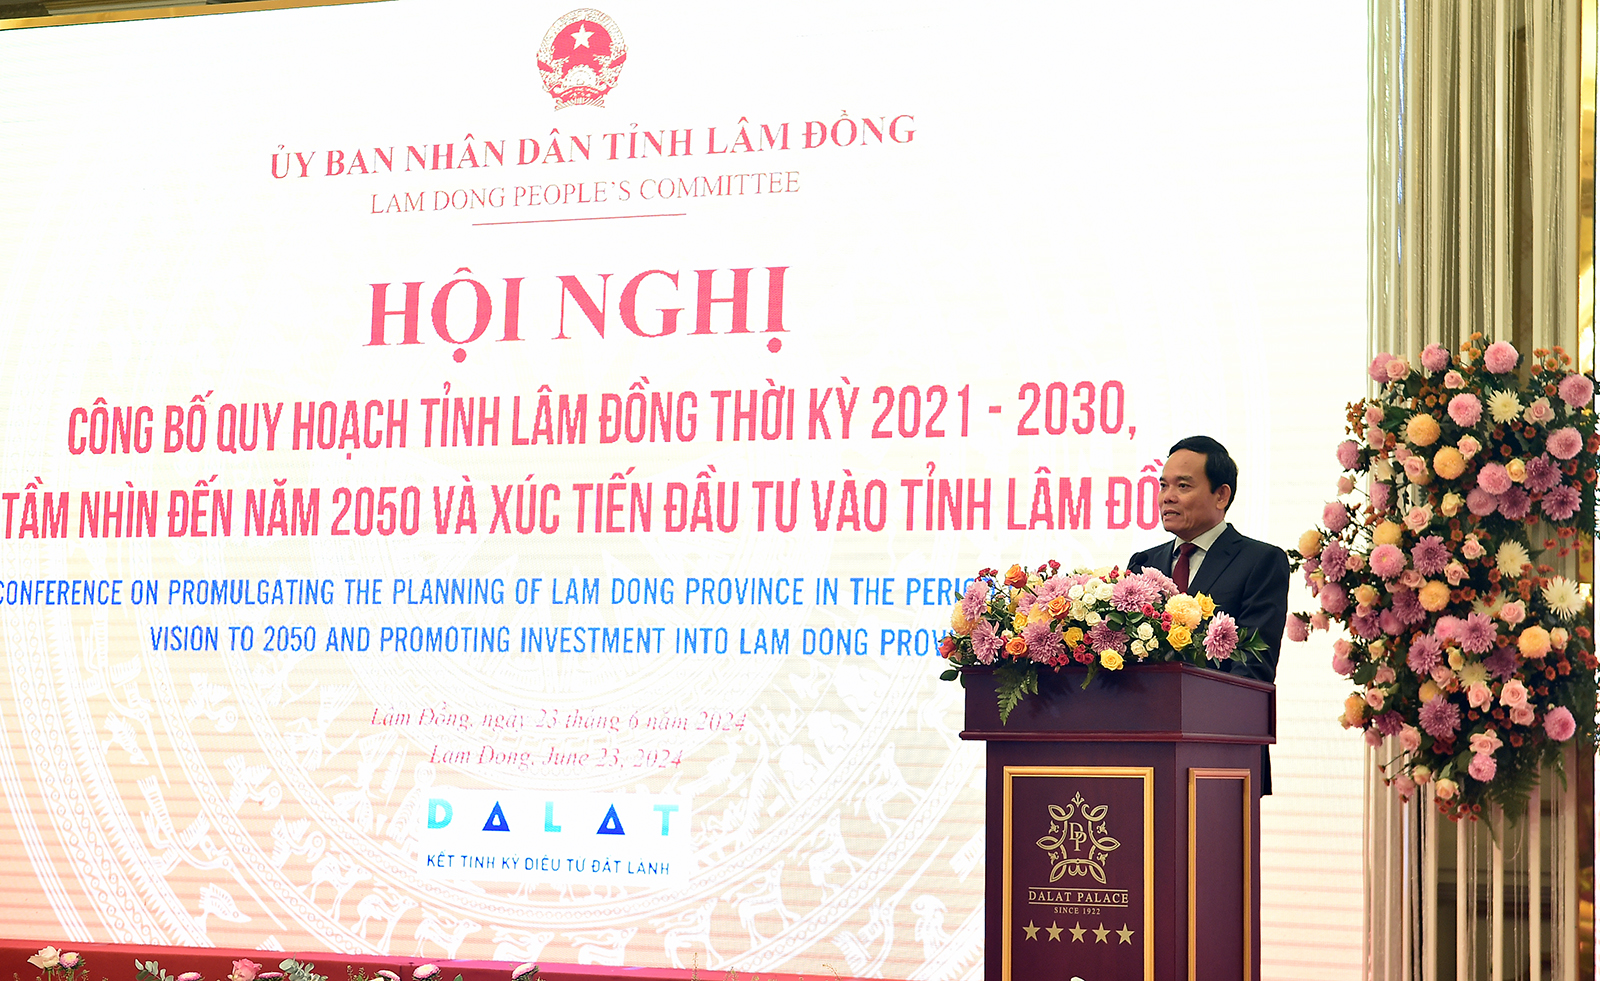 Phó Thủ tướng chỉ rõ Lâm Đồng còn 4 tiềm năng mới cần được tiếp tục phát huy mạnh mẽ - Ảnh: VGP/Hải Minh